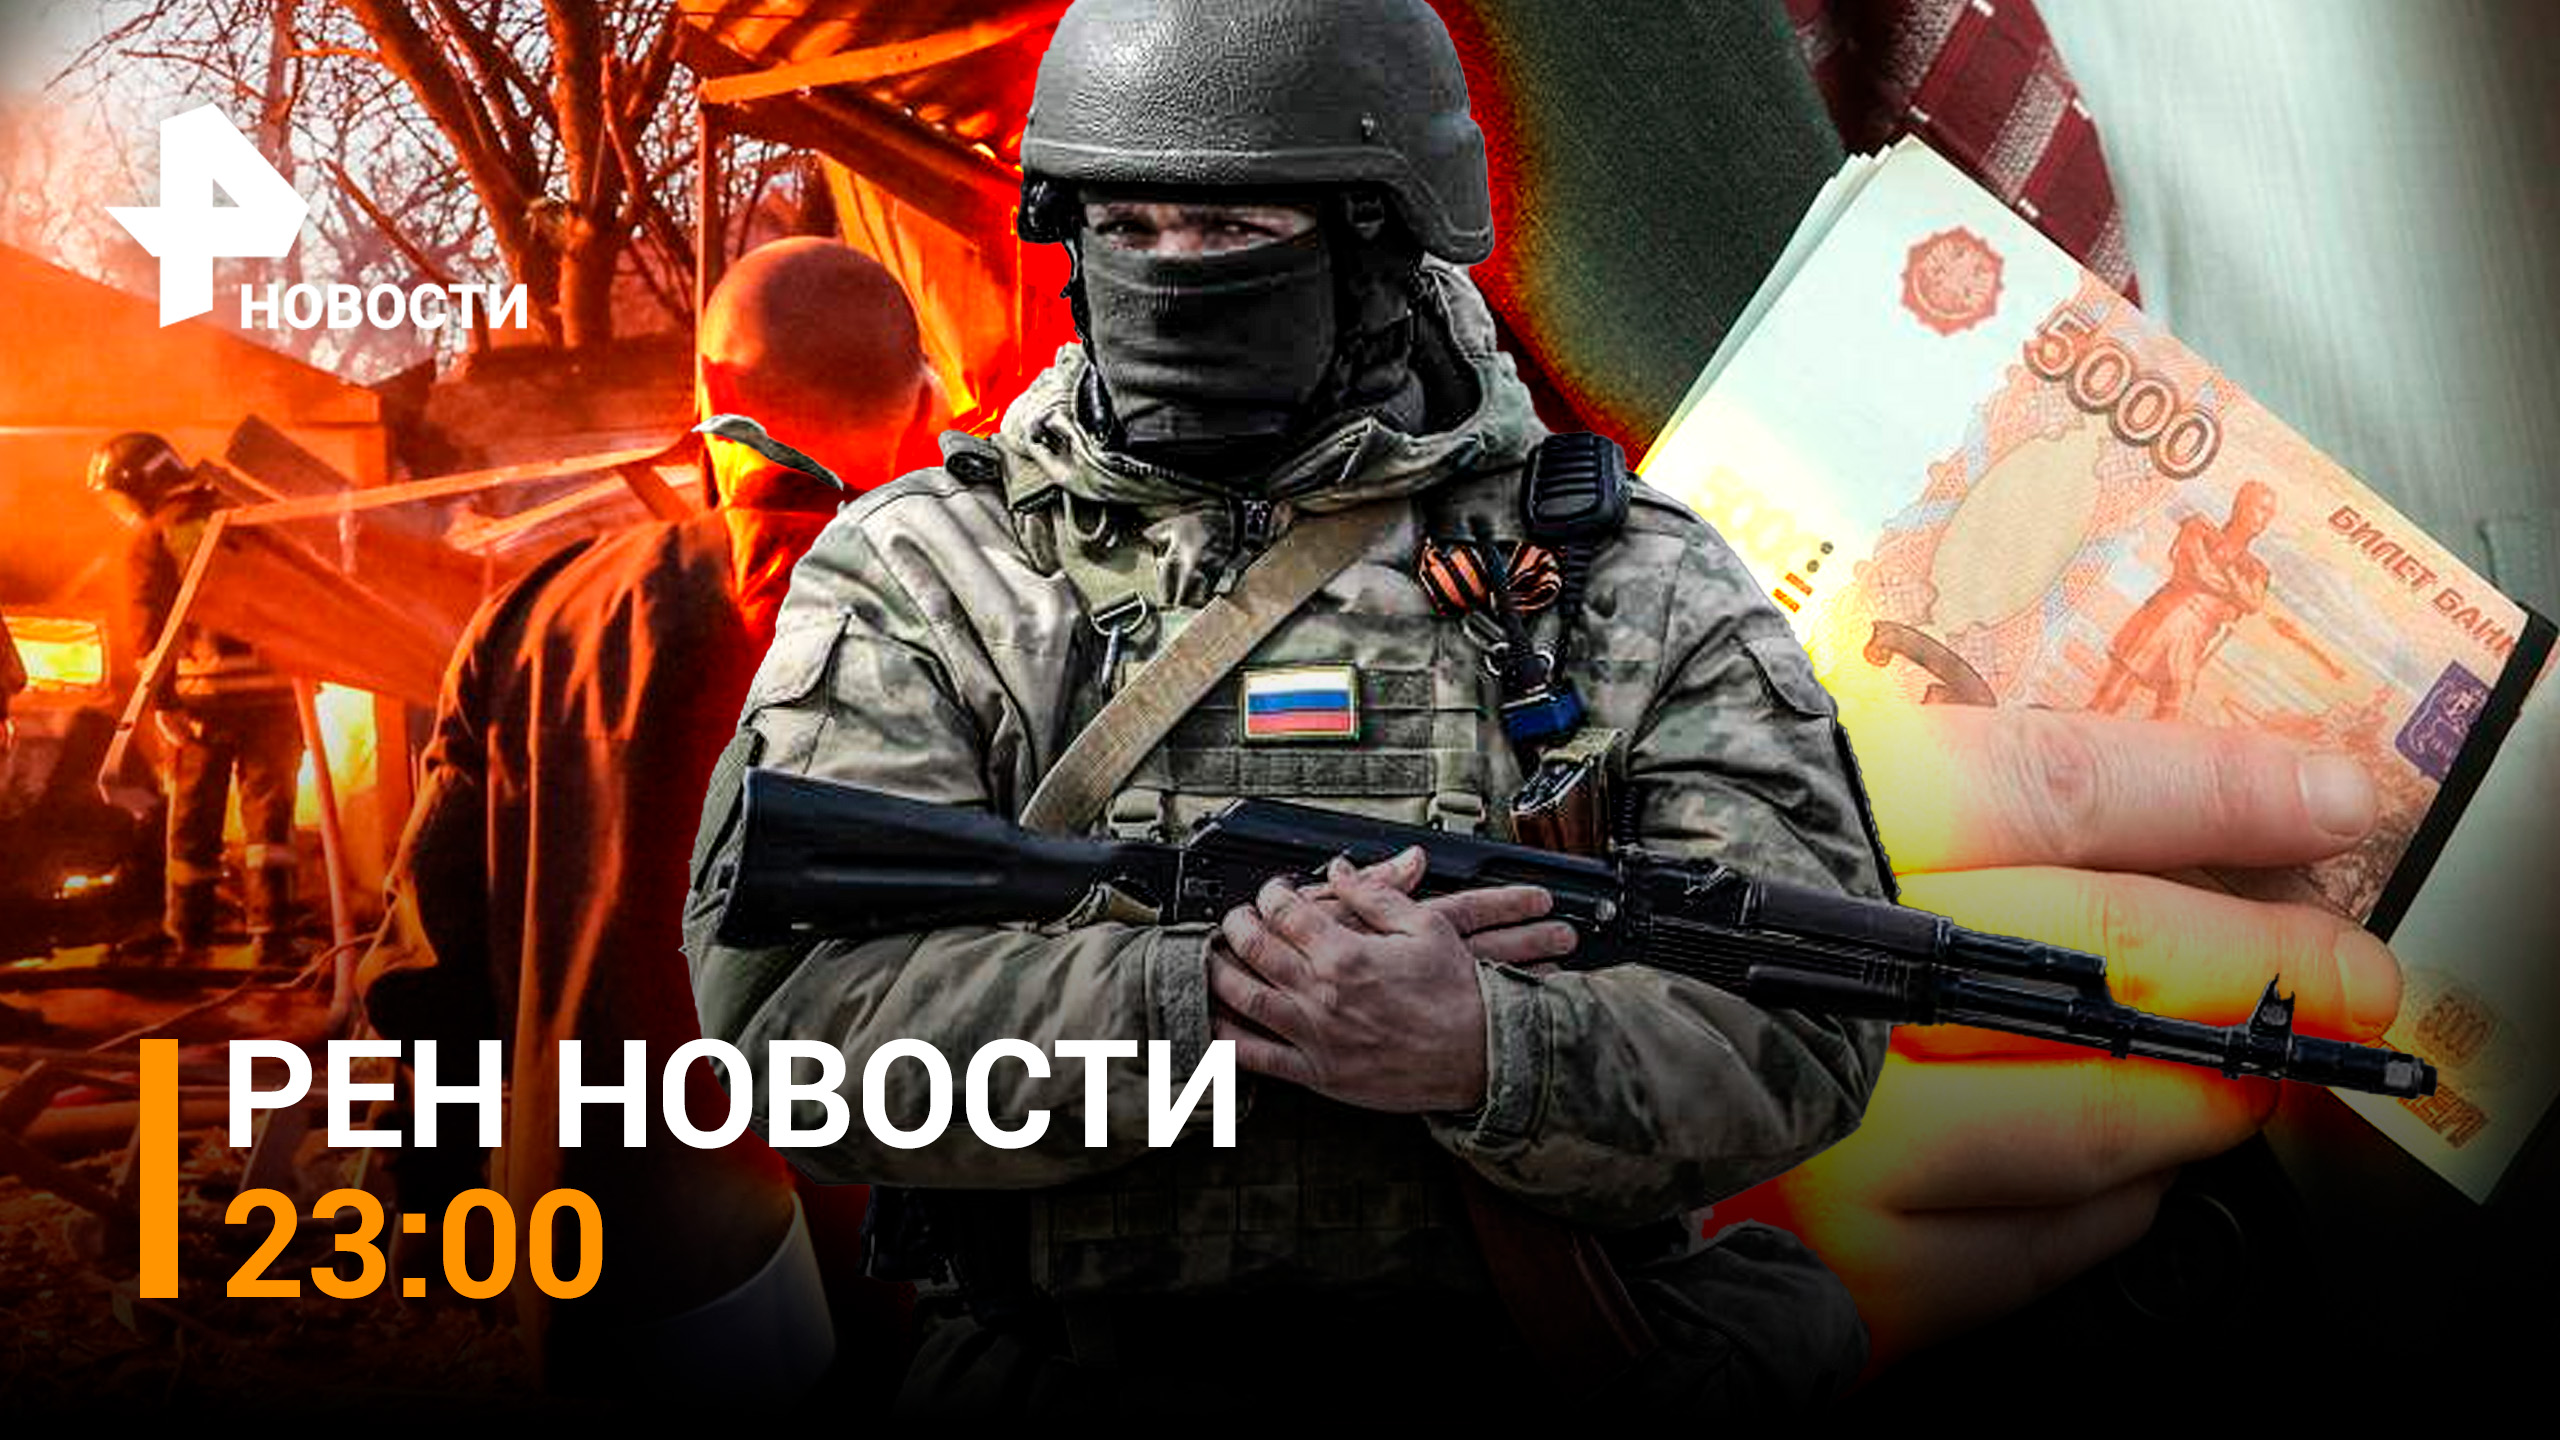 Донецк попал под тройной обстрел ВСУ. В Дагестане задержаны силовики за взятки / РЕН НОВОСТИ 23:00